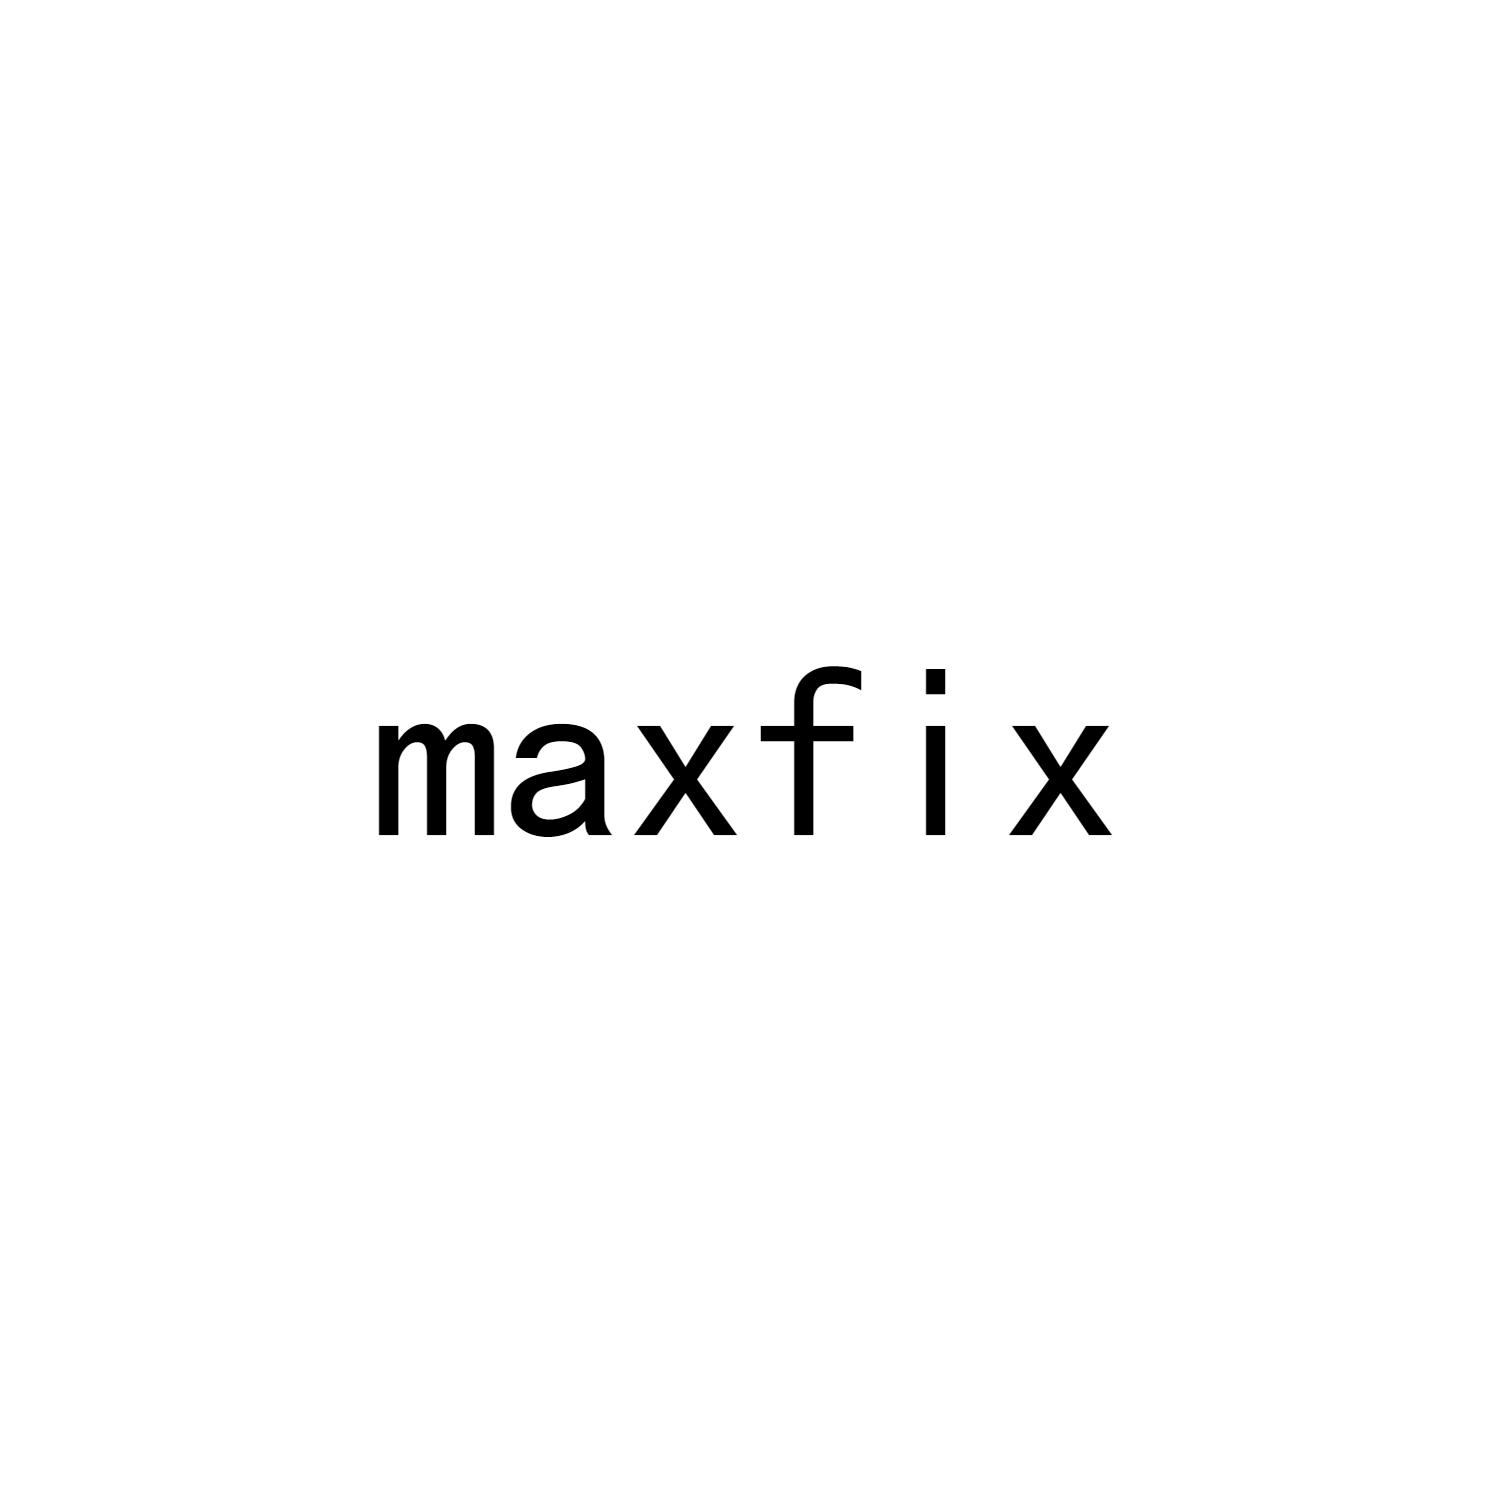 MAXFIX商标转让